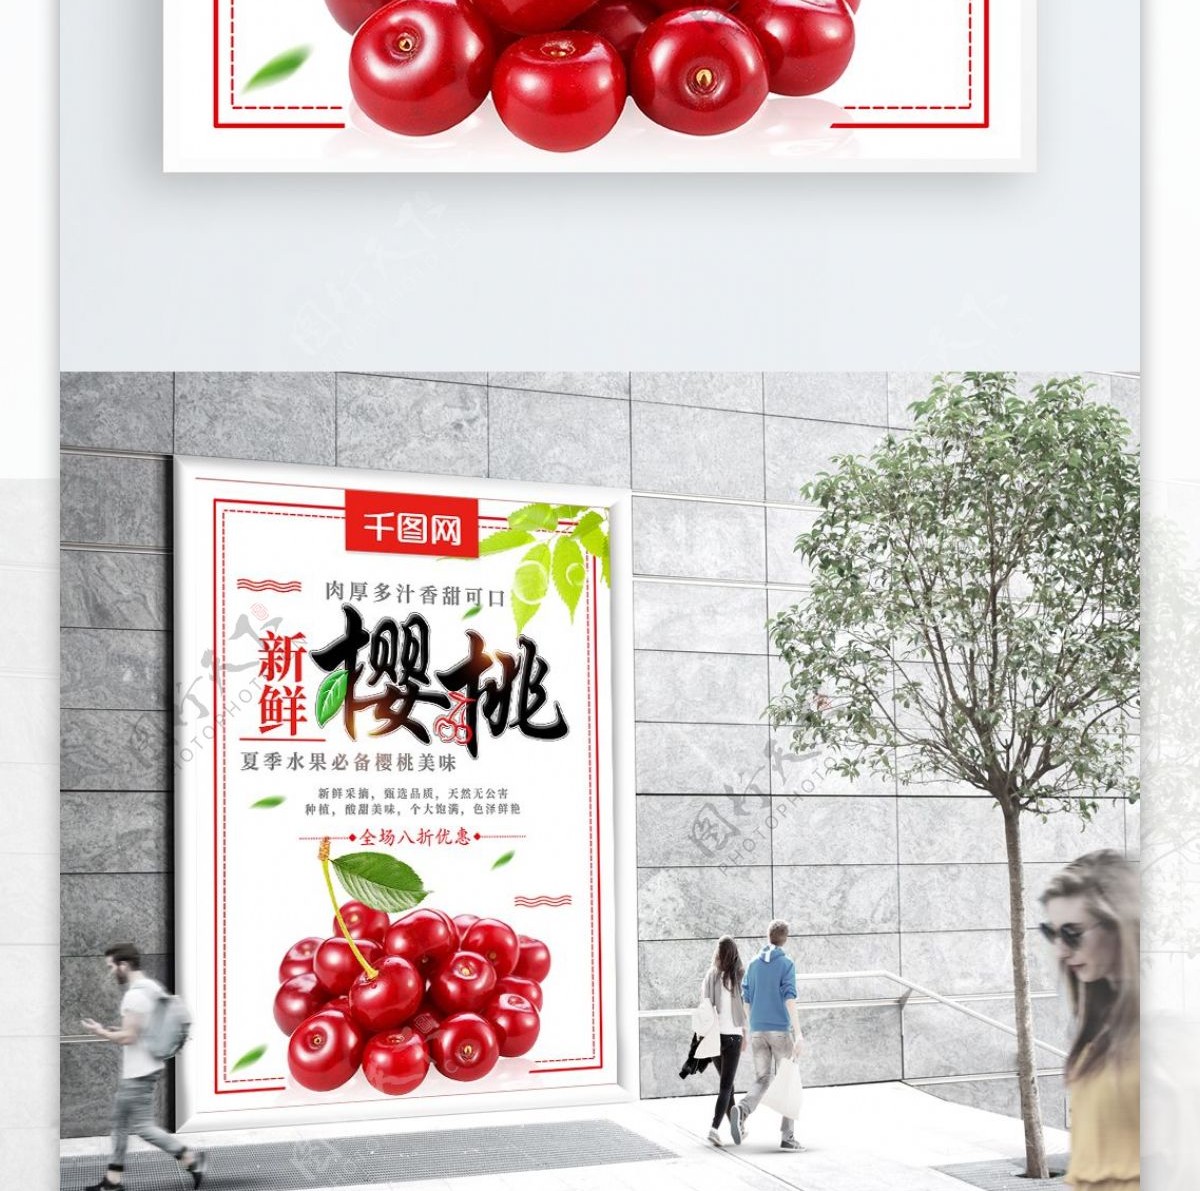 清新新鲜樱桃夏季水果促销海报